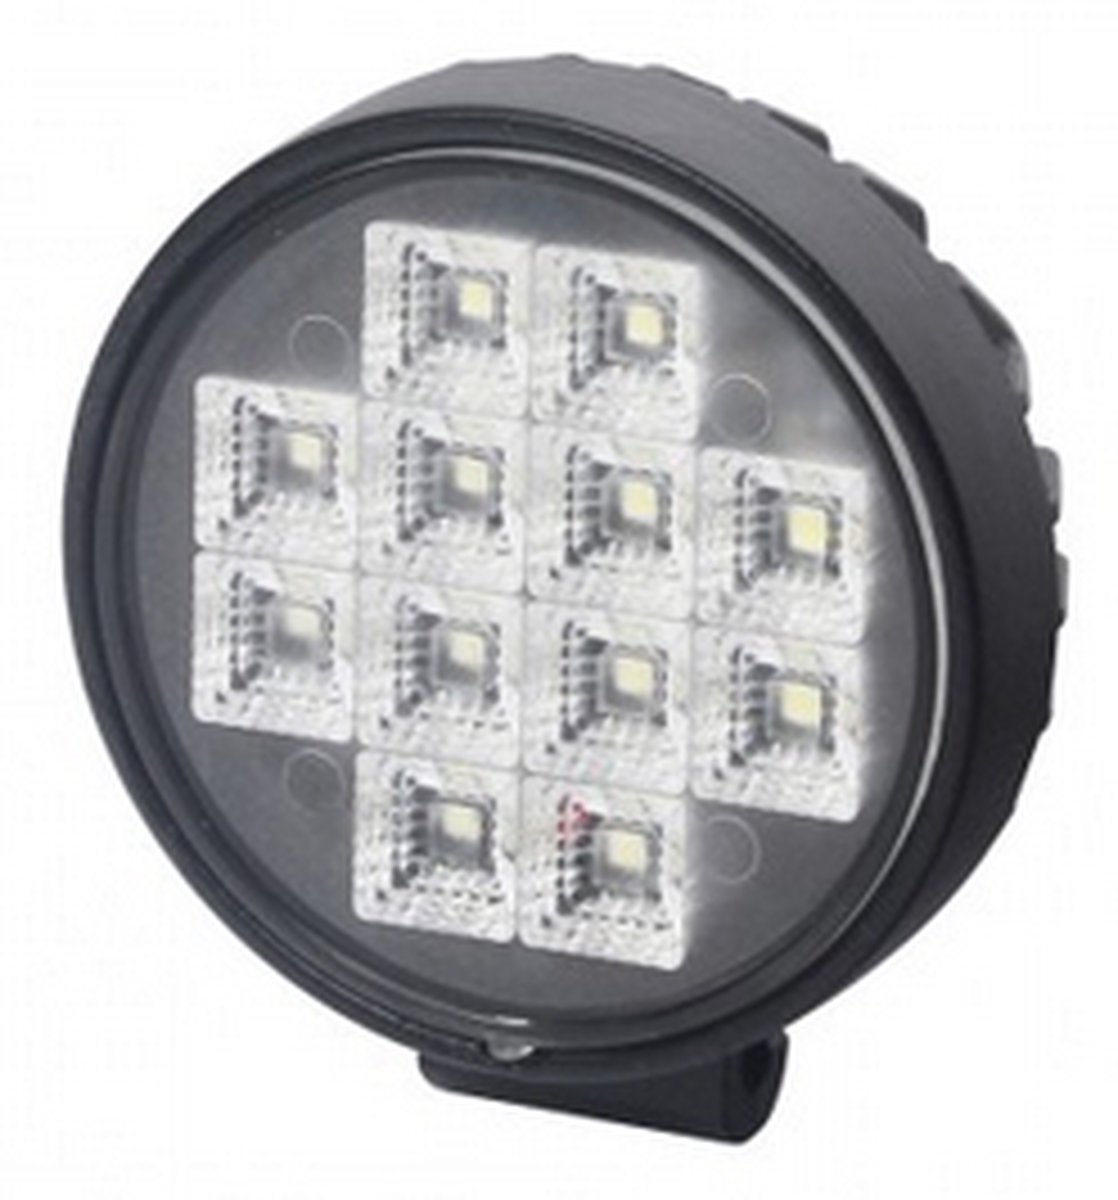 LED Werklamp met schakelaar - 12 LEDS - Rond - 12 Watt - Ledlamp